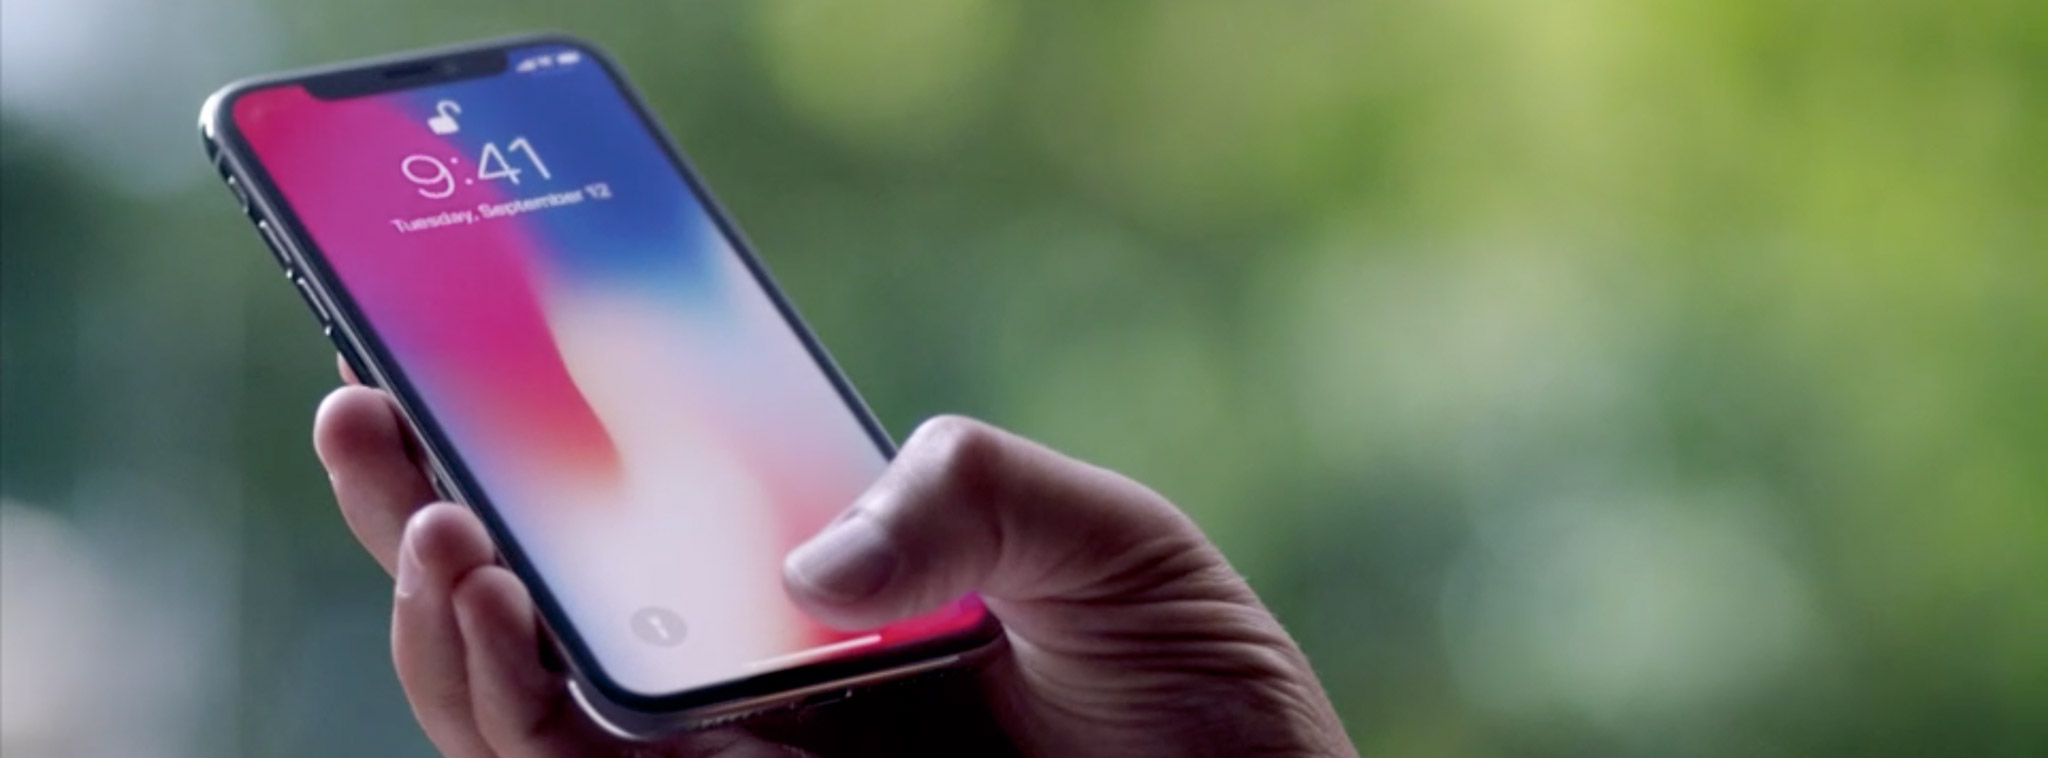 Chọn màn hình OLED cho iPhone X, Apple làm khó các đối tác cung cấp linh kiện